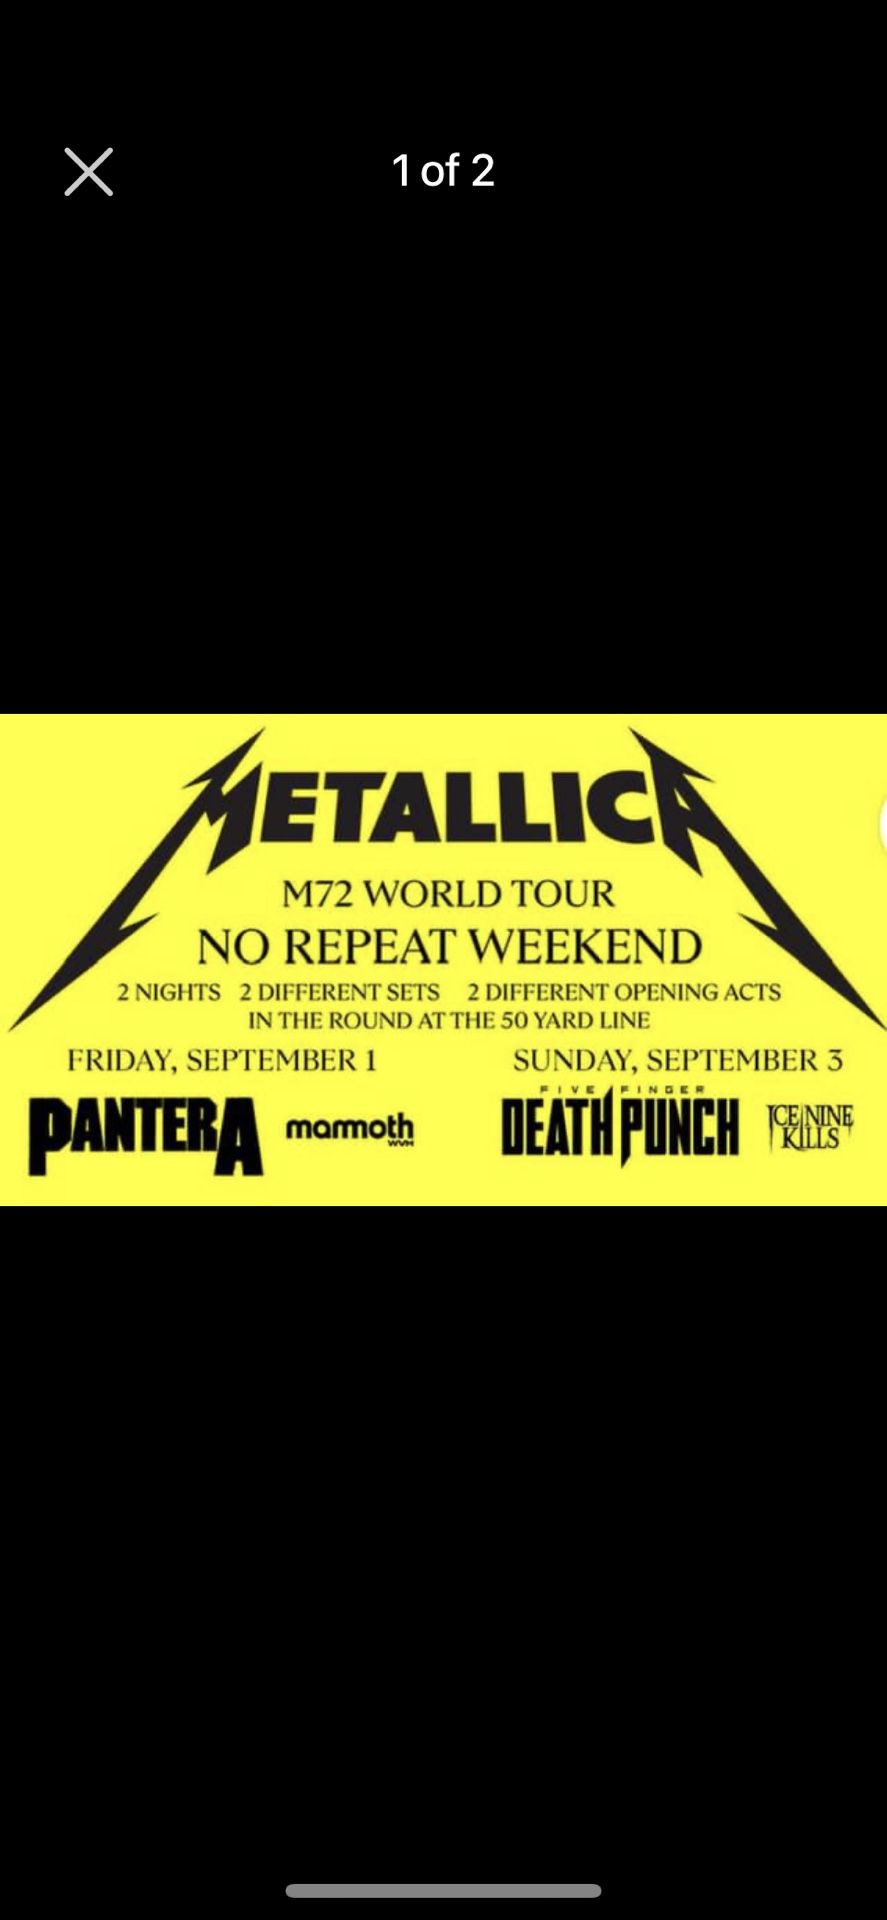 4 Metallica M72 World Tour Tickets (Both Nights)